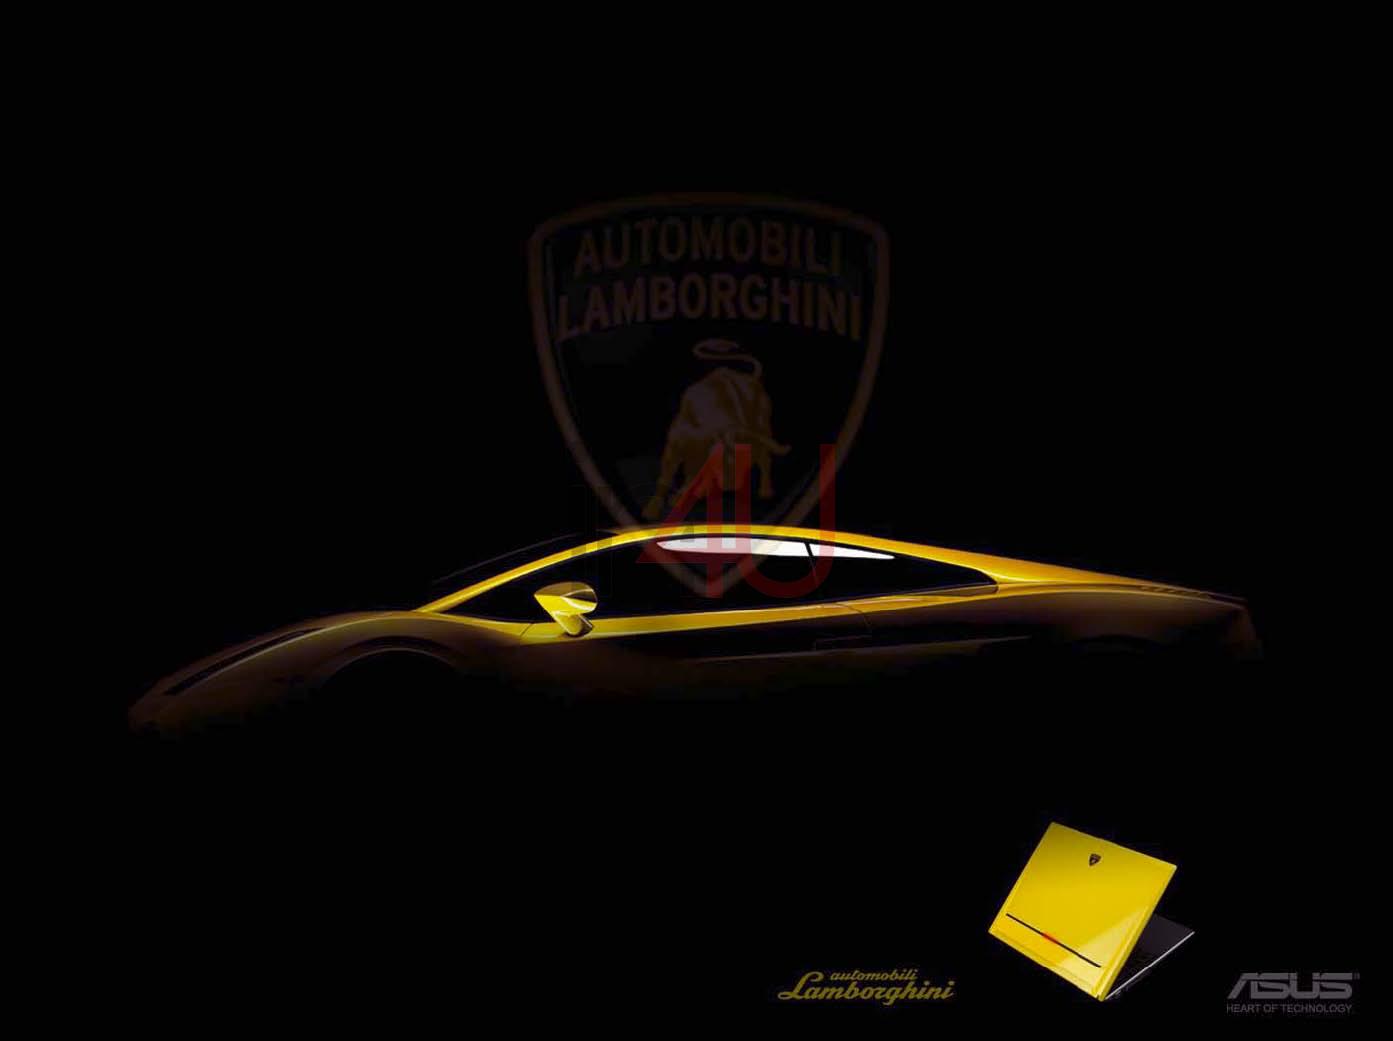 Asus Laptop Wallpaper Lamborghini HD Car And